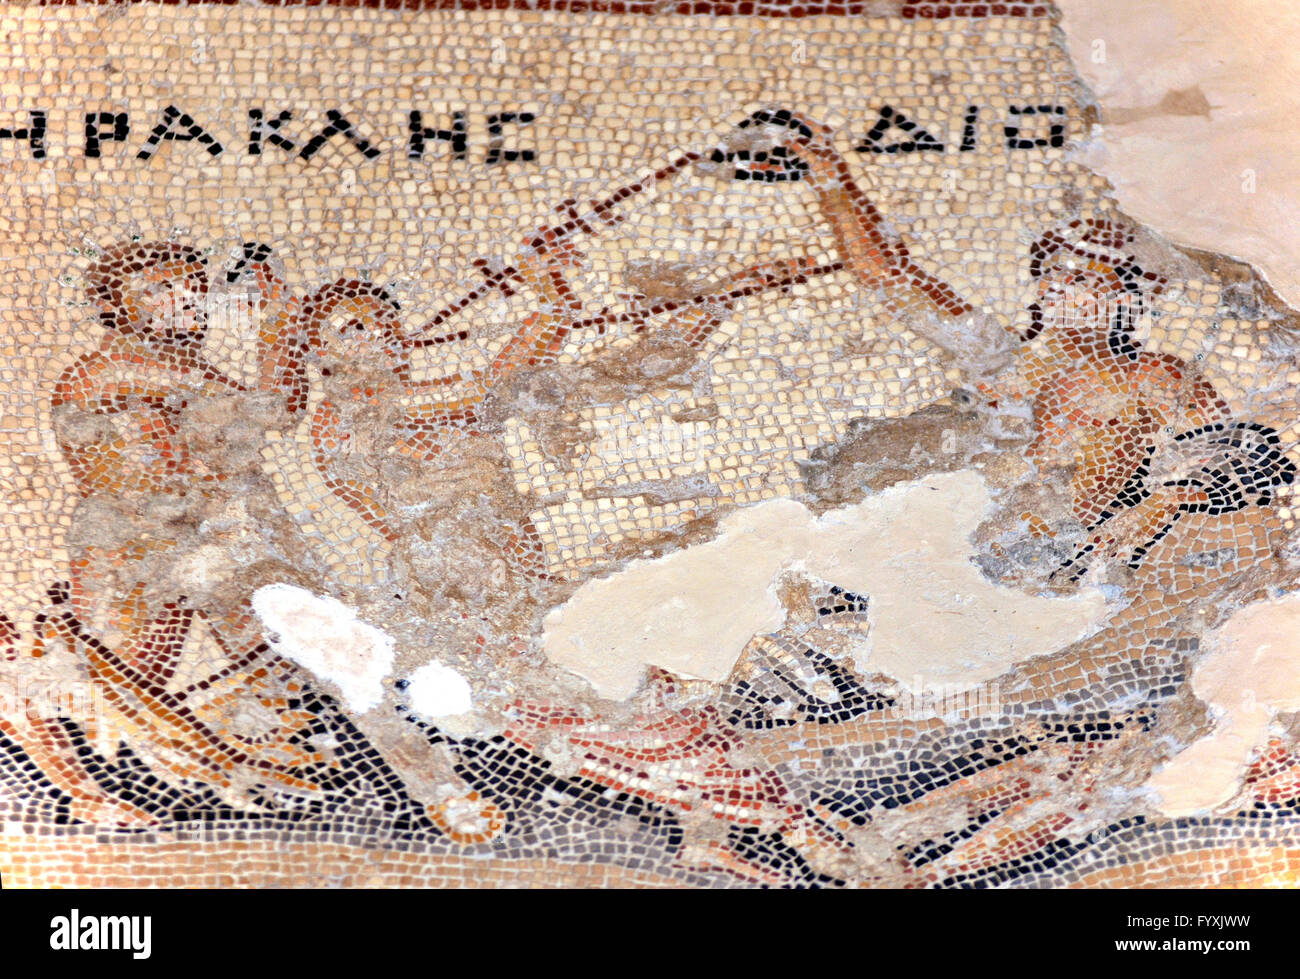 Mosaïque Hercules Hercules, en concours de boisson avec Dionysos, Maison de Dionysos, ville en ruines, Sepphoris, Israël / Diocesaraea, Saffuriya Banque D'Images